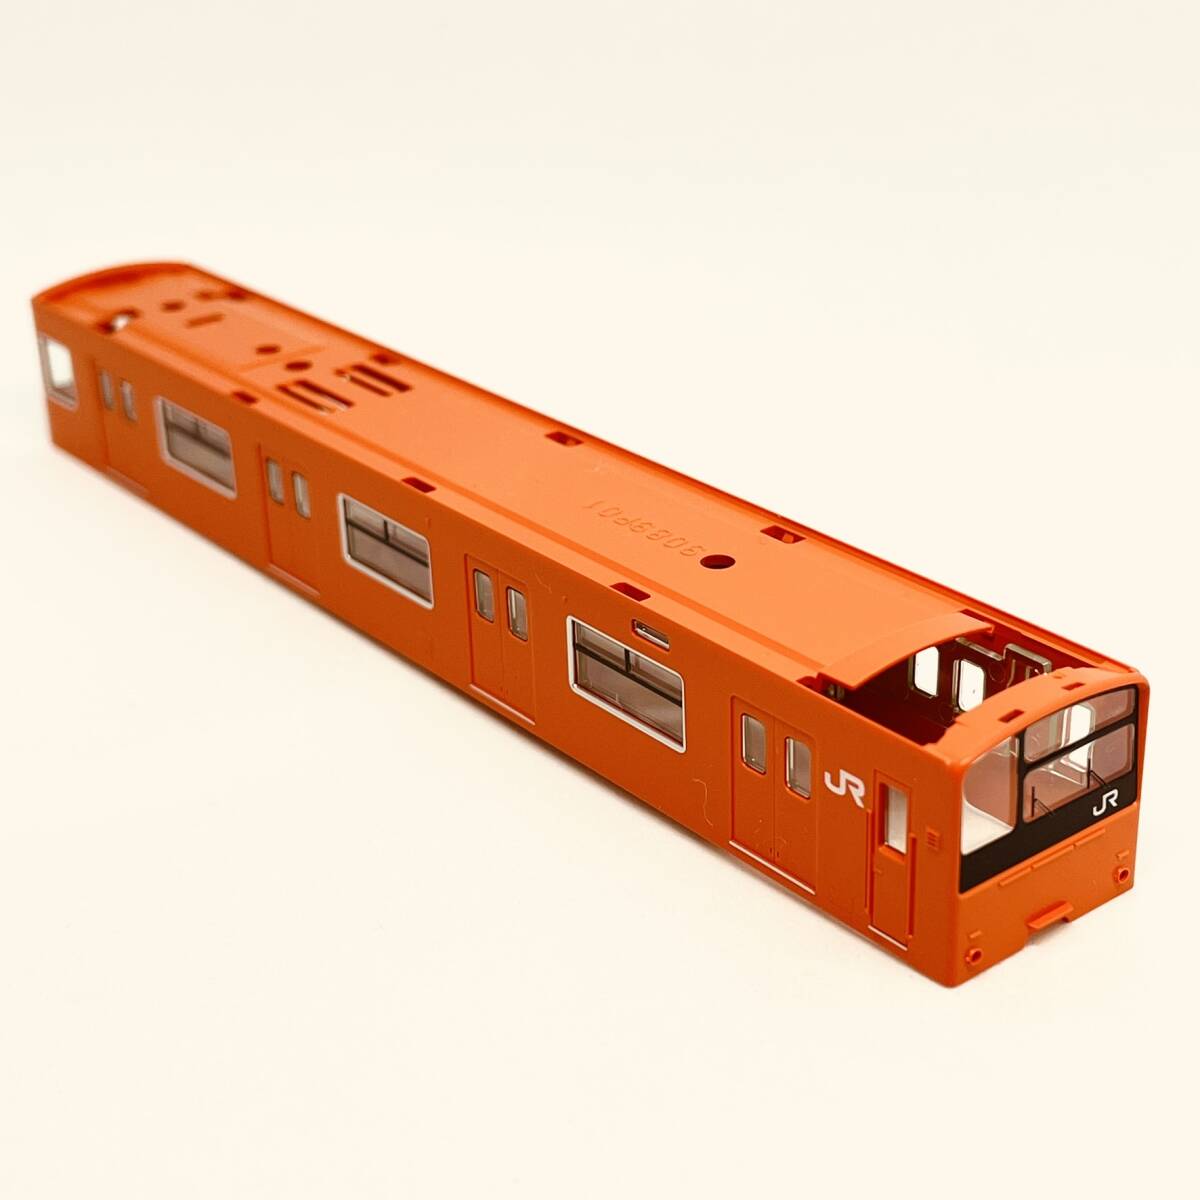 TOMIX クハ201 30N更新車/オレンジ色 ボディ+ガラス 1両分入り 98843 JR 201系通勤電車(JR西日本30N更新車・オレンジ)セットからのバラシ_入札個数1でのお渡し内容です。